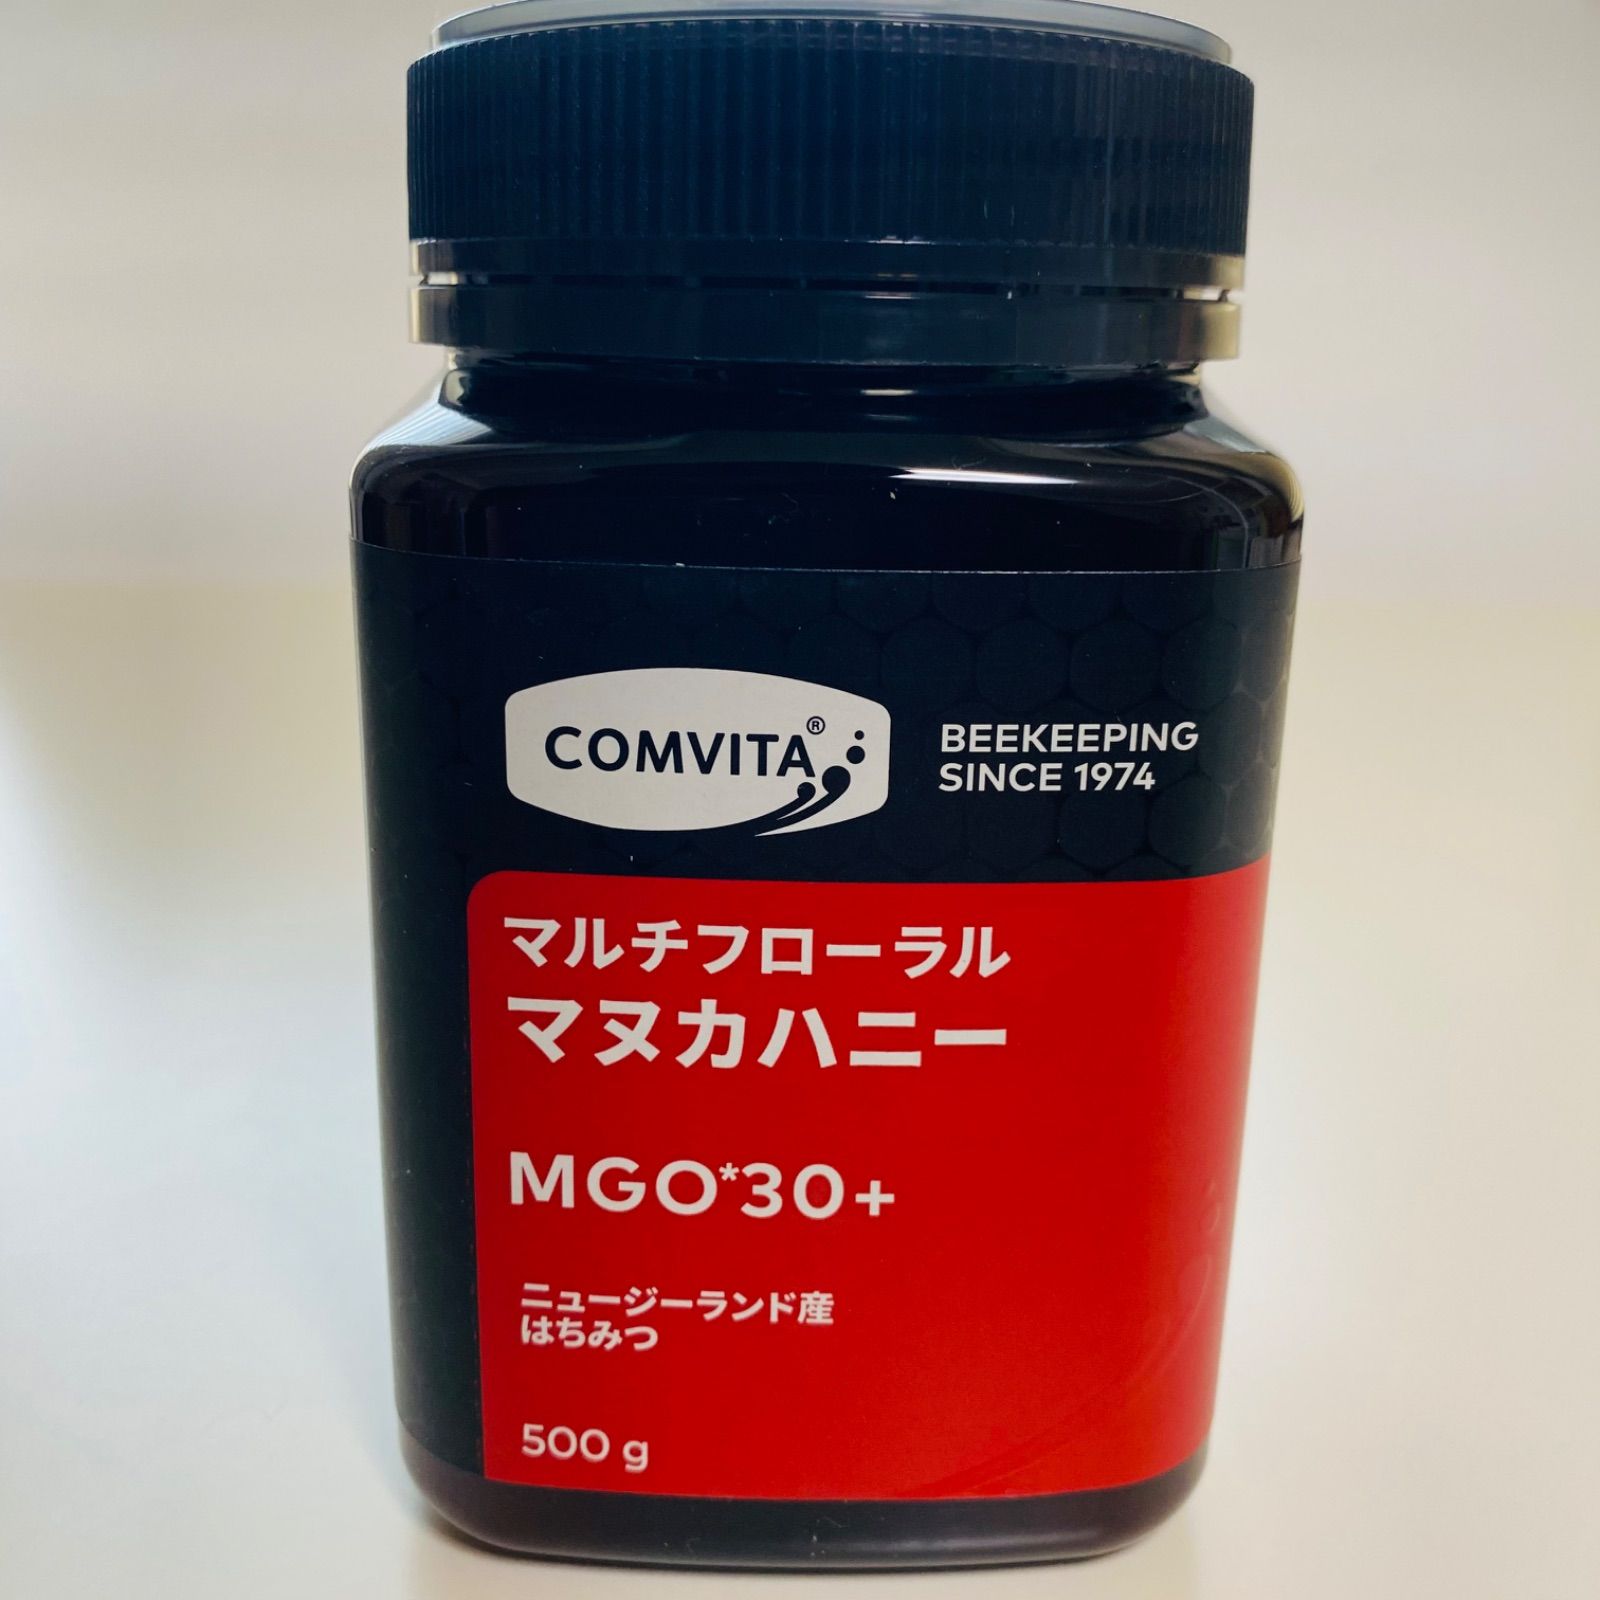 コンビタ マルチフローラル マヌカハニー 500g MGO 30+ - メルカリ